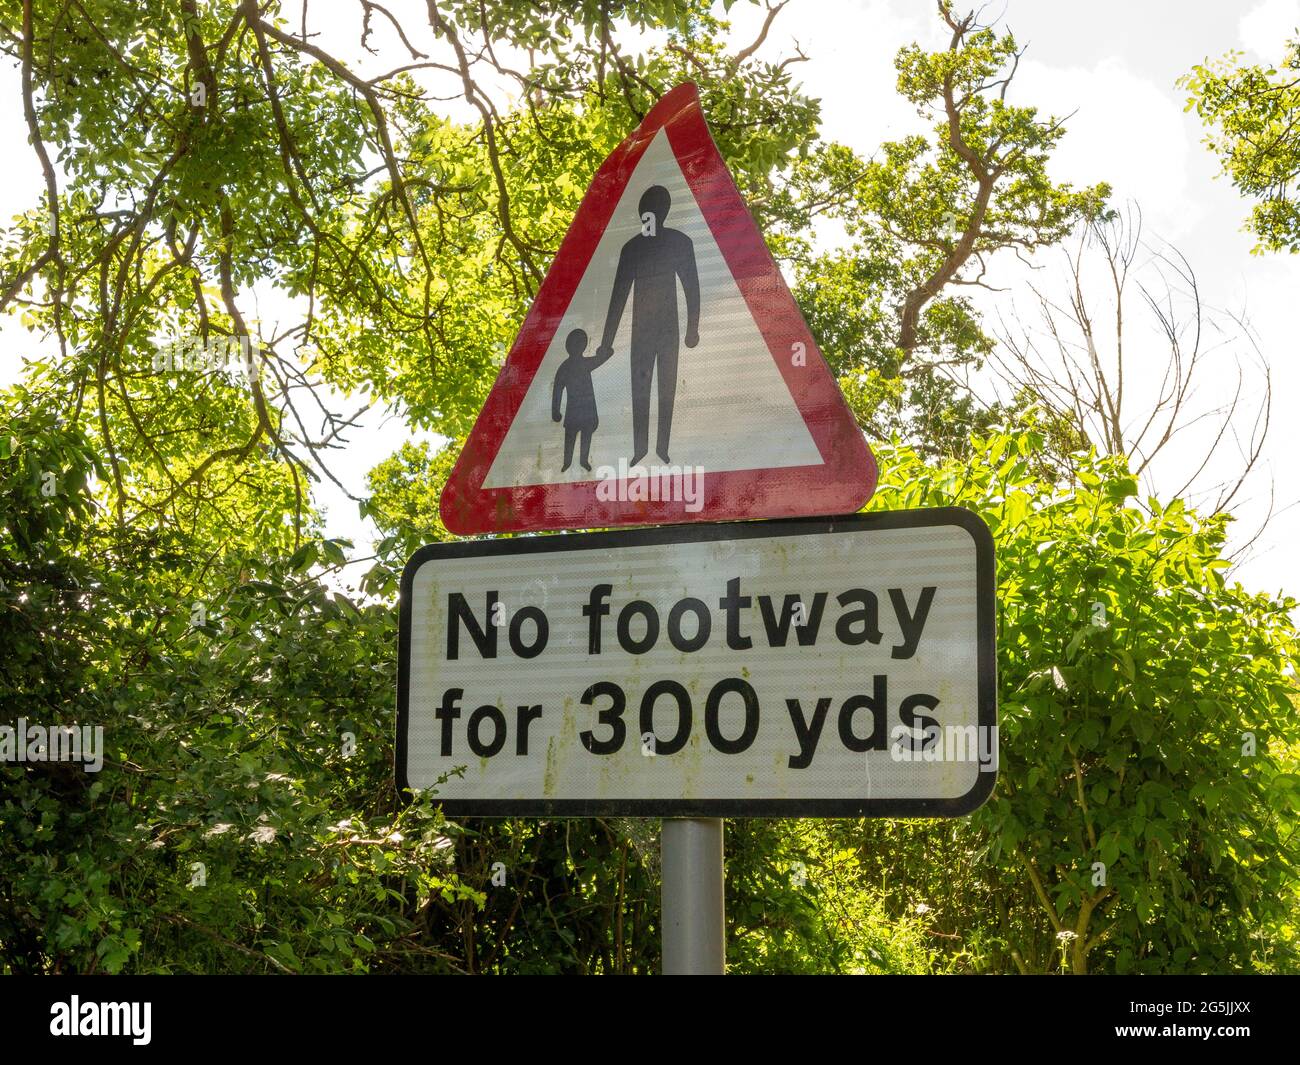 Un cartello stradale che indica che non c'è "nessun passaggio per 300 yds" usando parole e un simbolo di figura e bambino adulto in un triangolo rosso di avvertimento Foto Stock